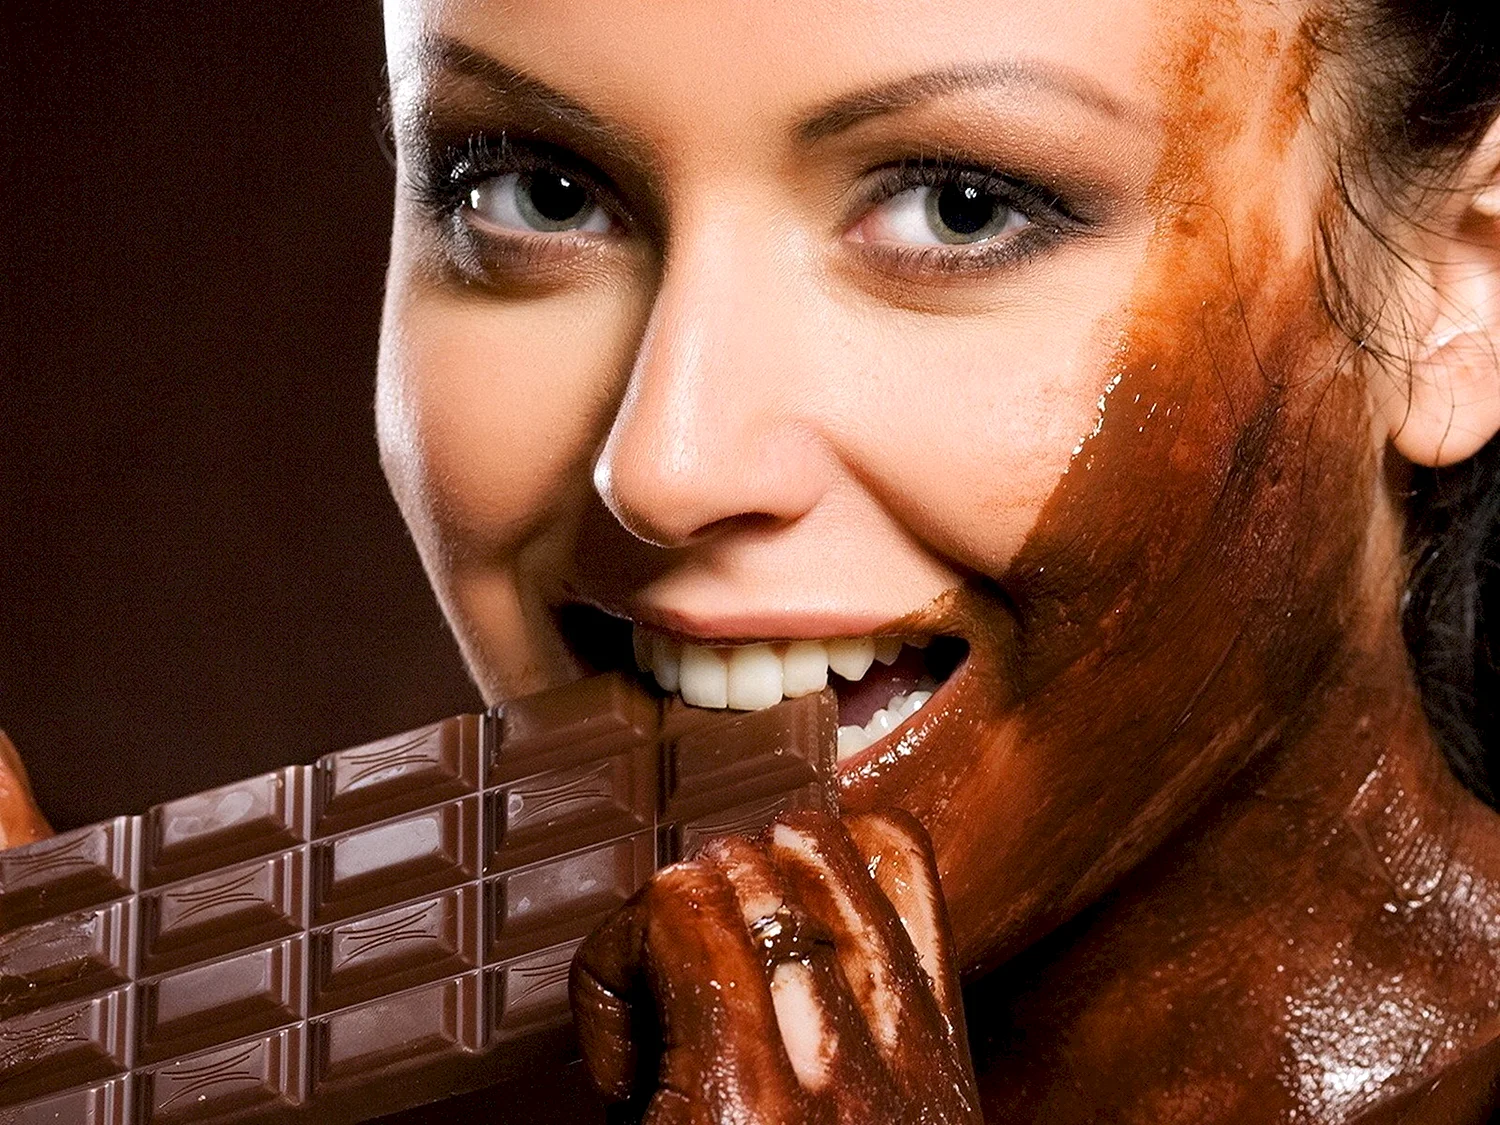 Девушка с шоколадкой